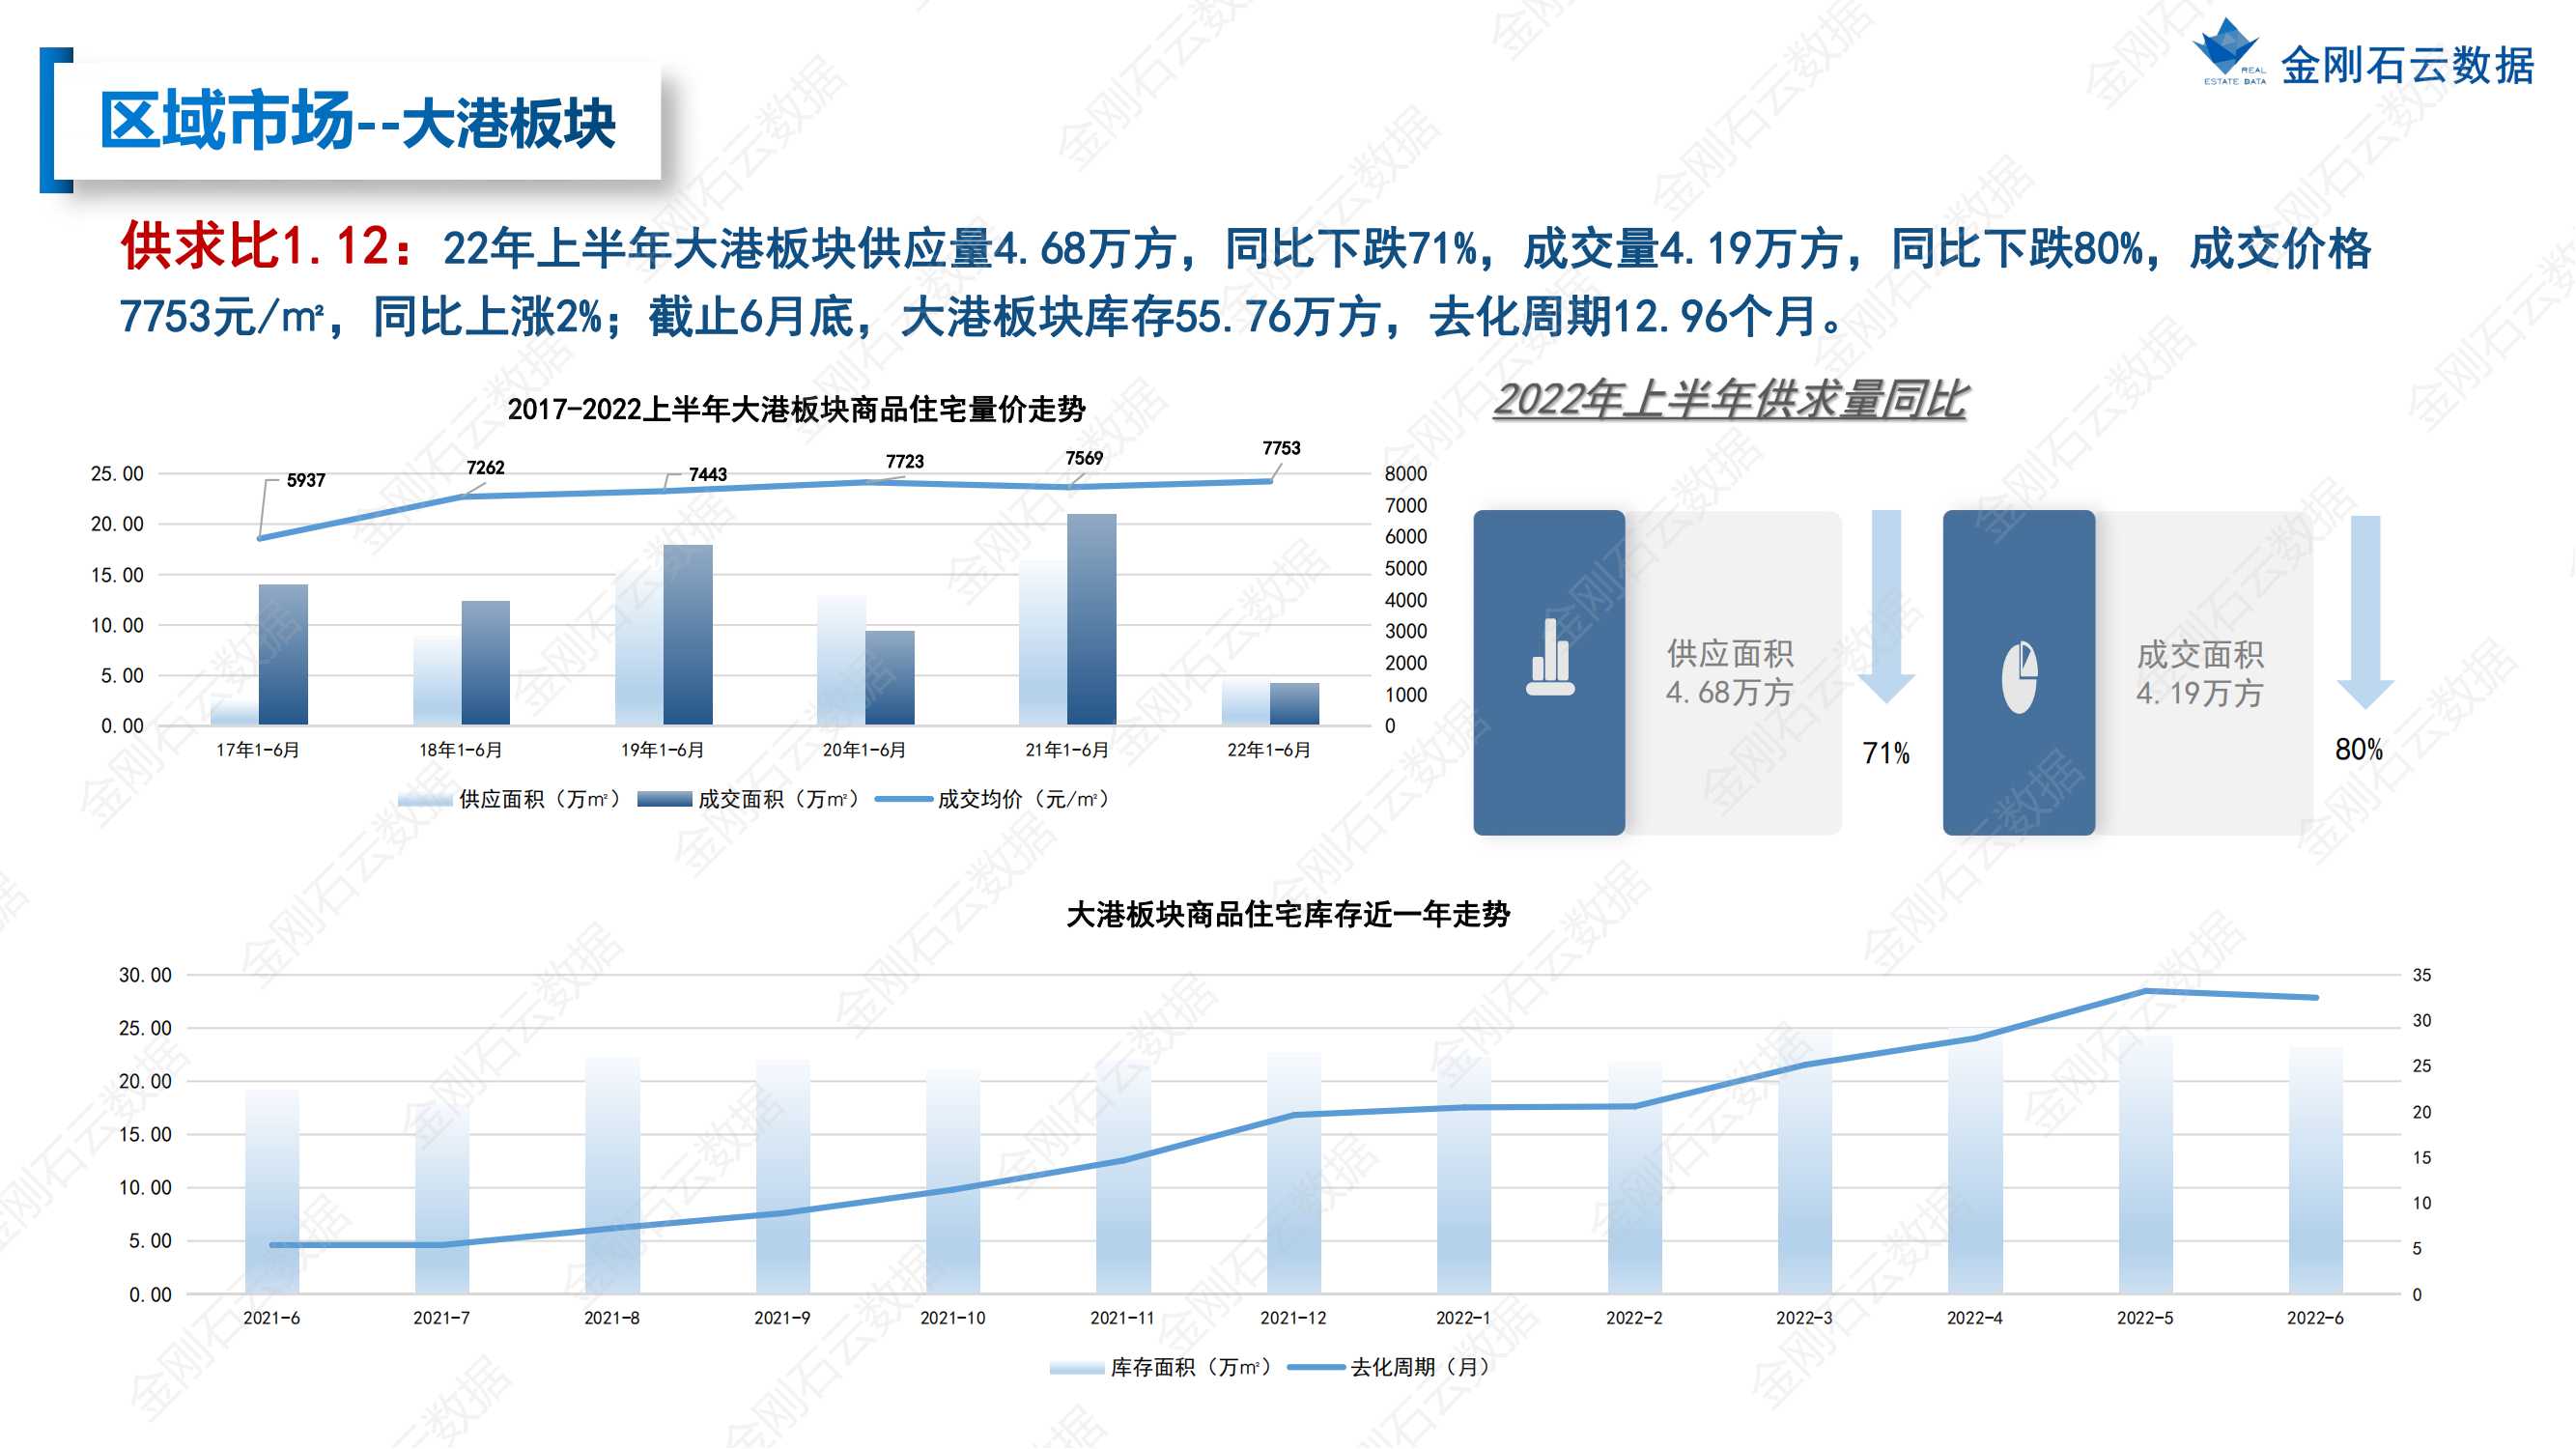 【江苏镇江】2022年上半年度市场报告(图29)